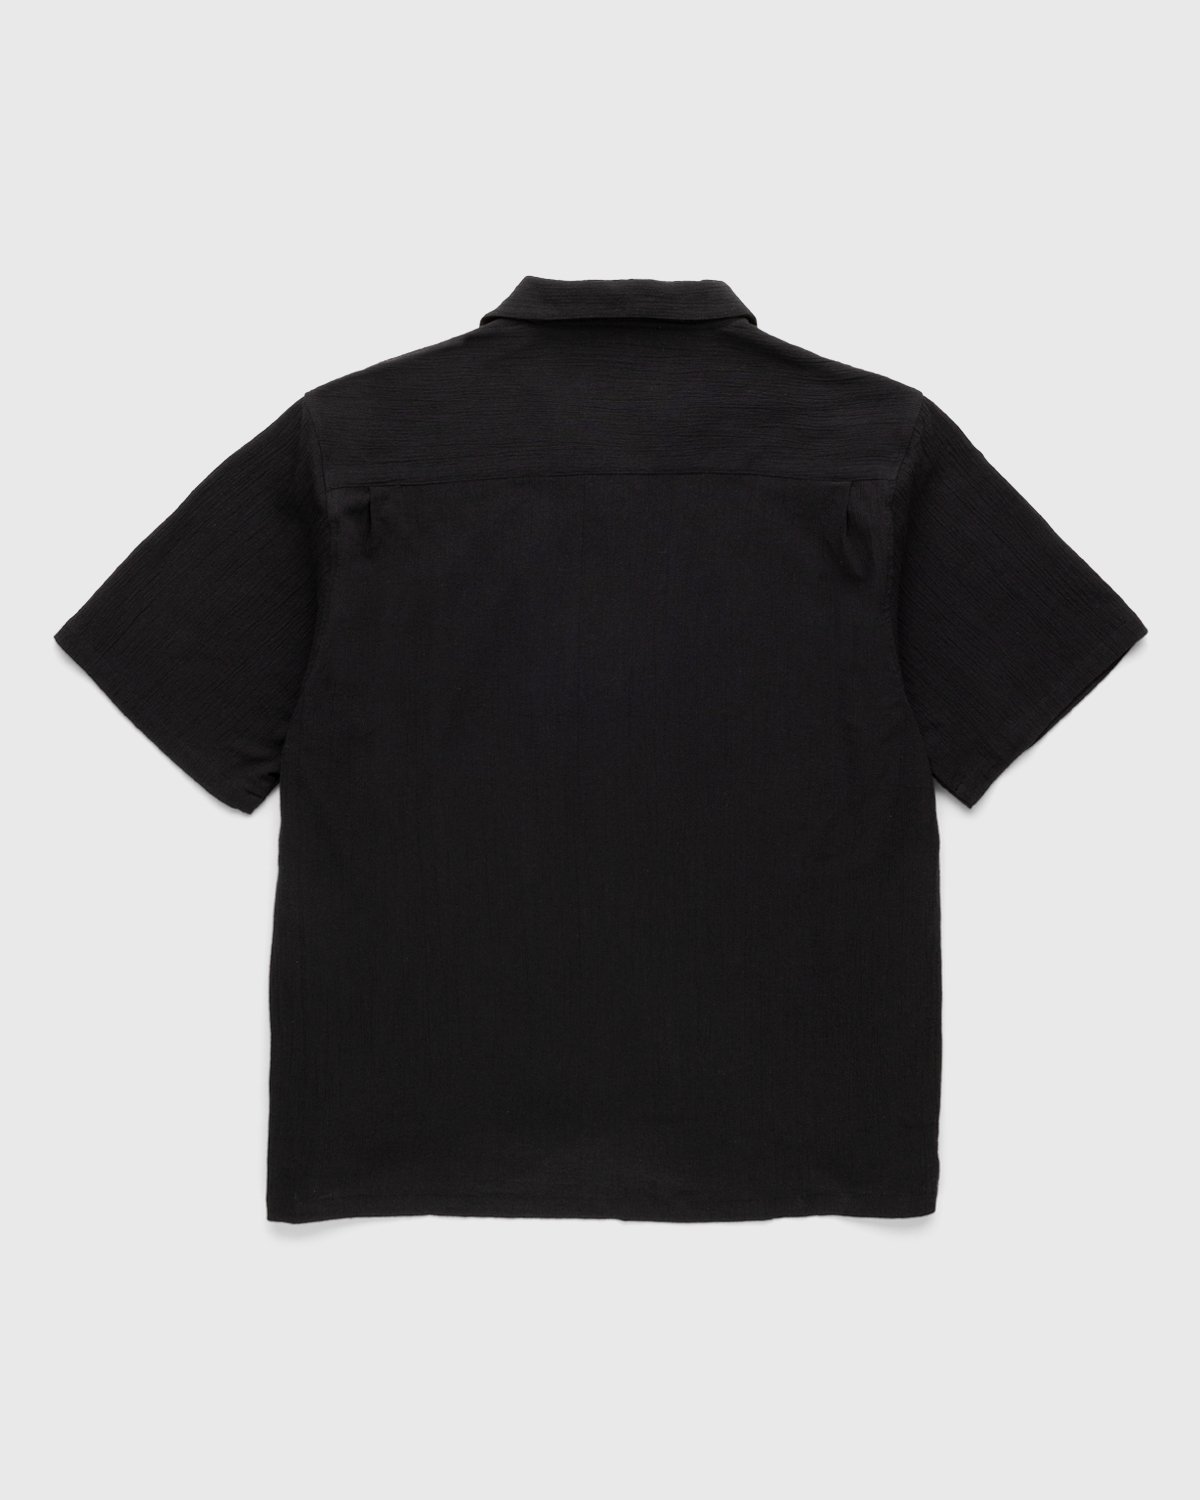 Highsnobiety - Crepe Short Sleeve Shirt Black - Clothing - Black - Image 2